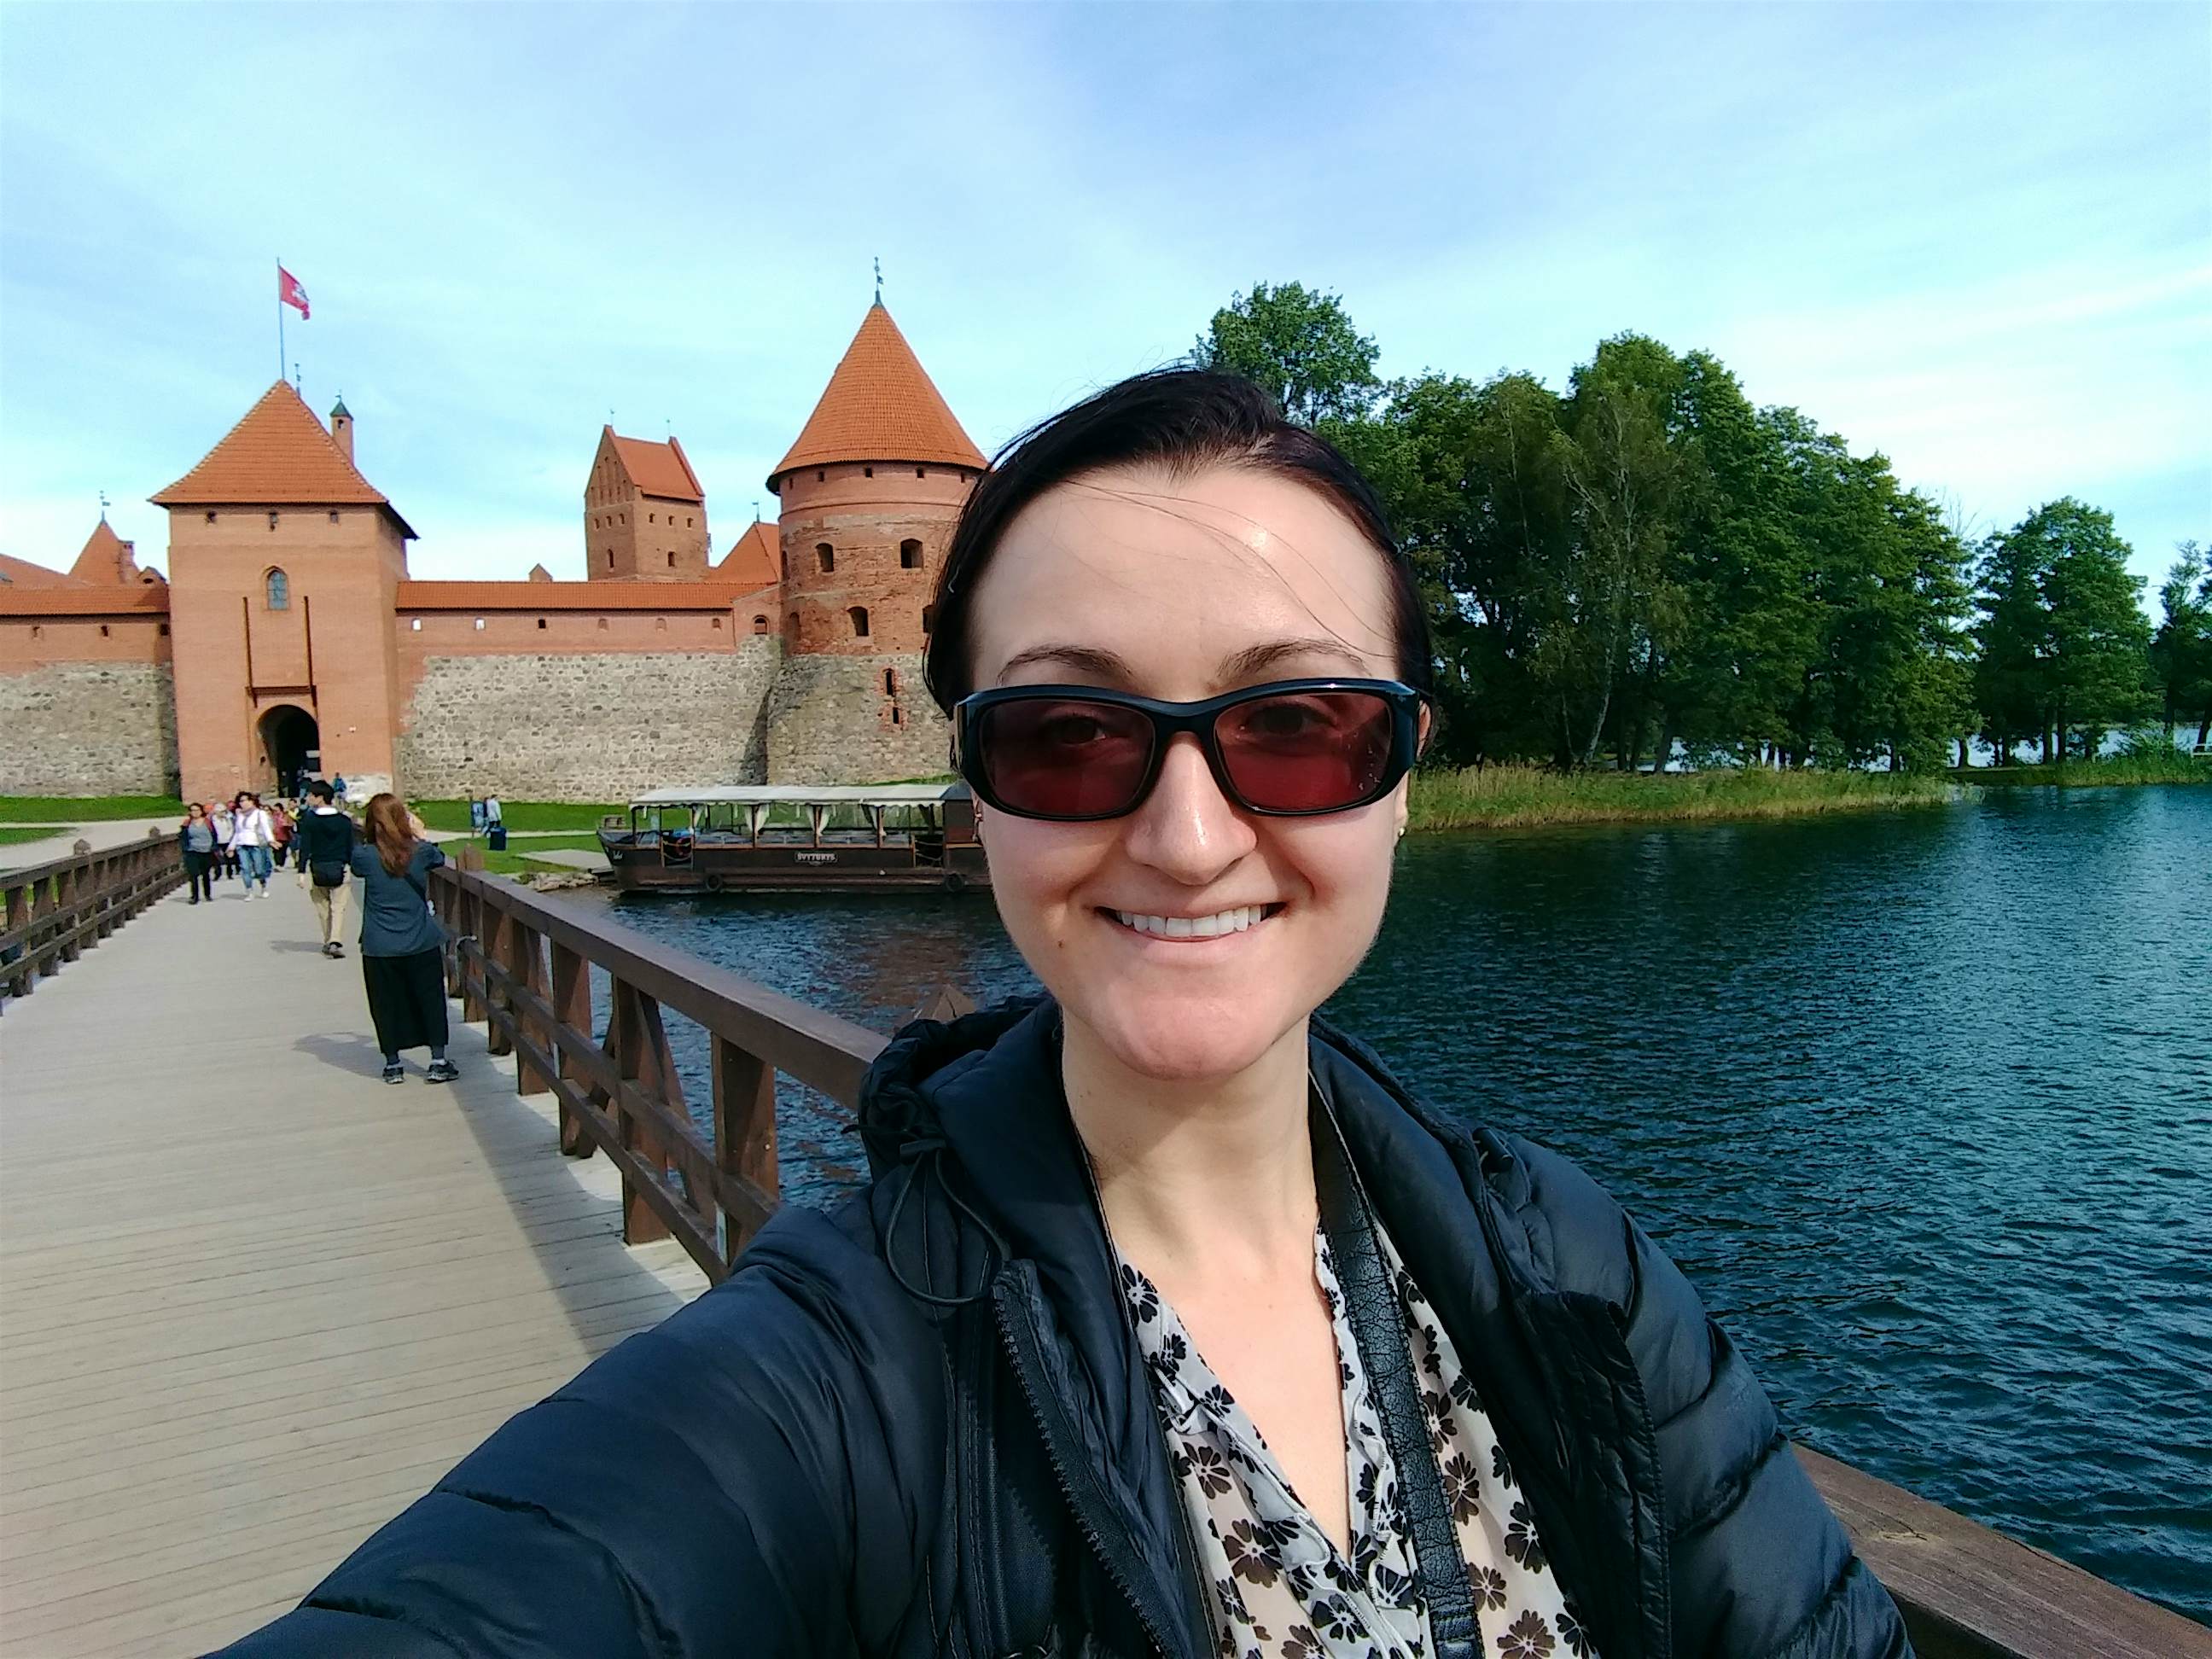 Тракайский замок в Литве - Анита Исальска.jpg